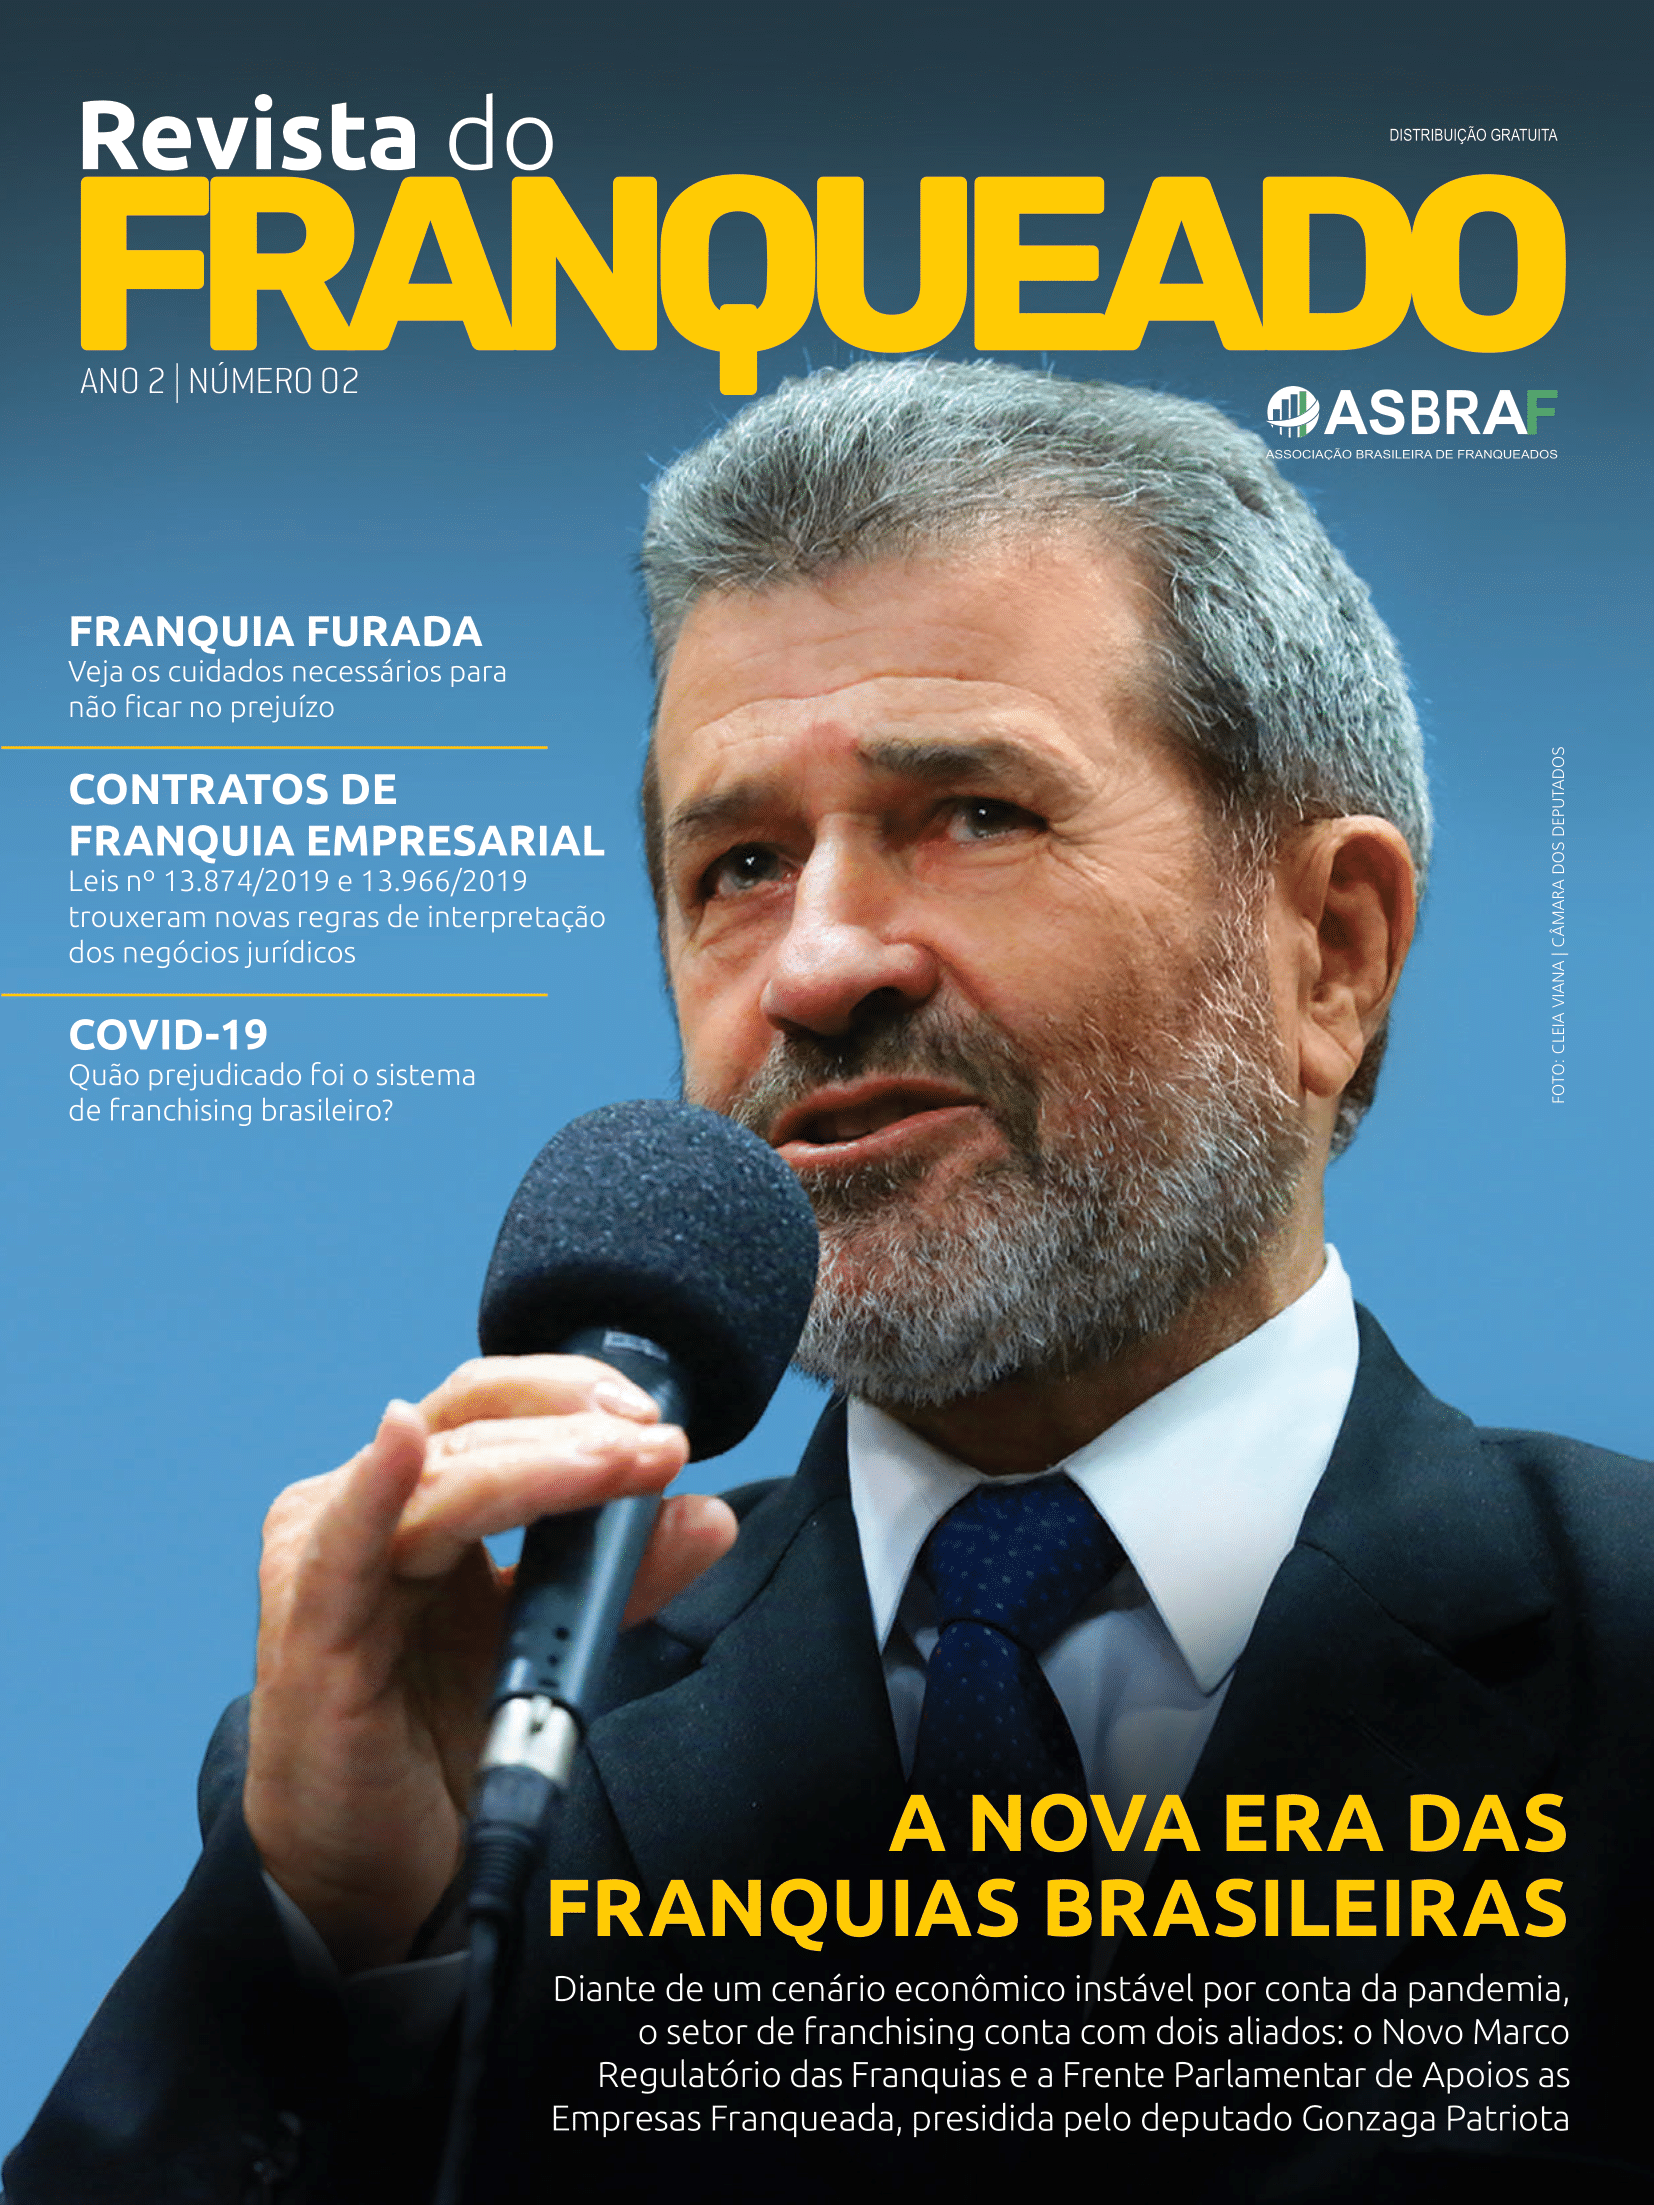 Revista_Franqueado_edicao_02-1